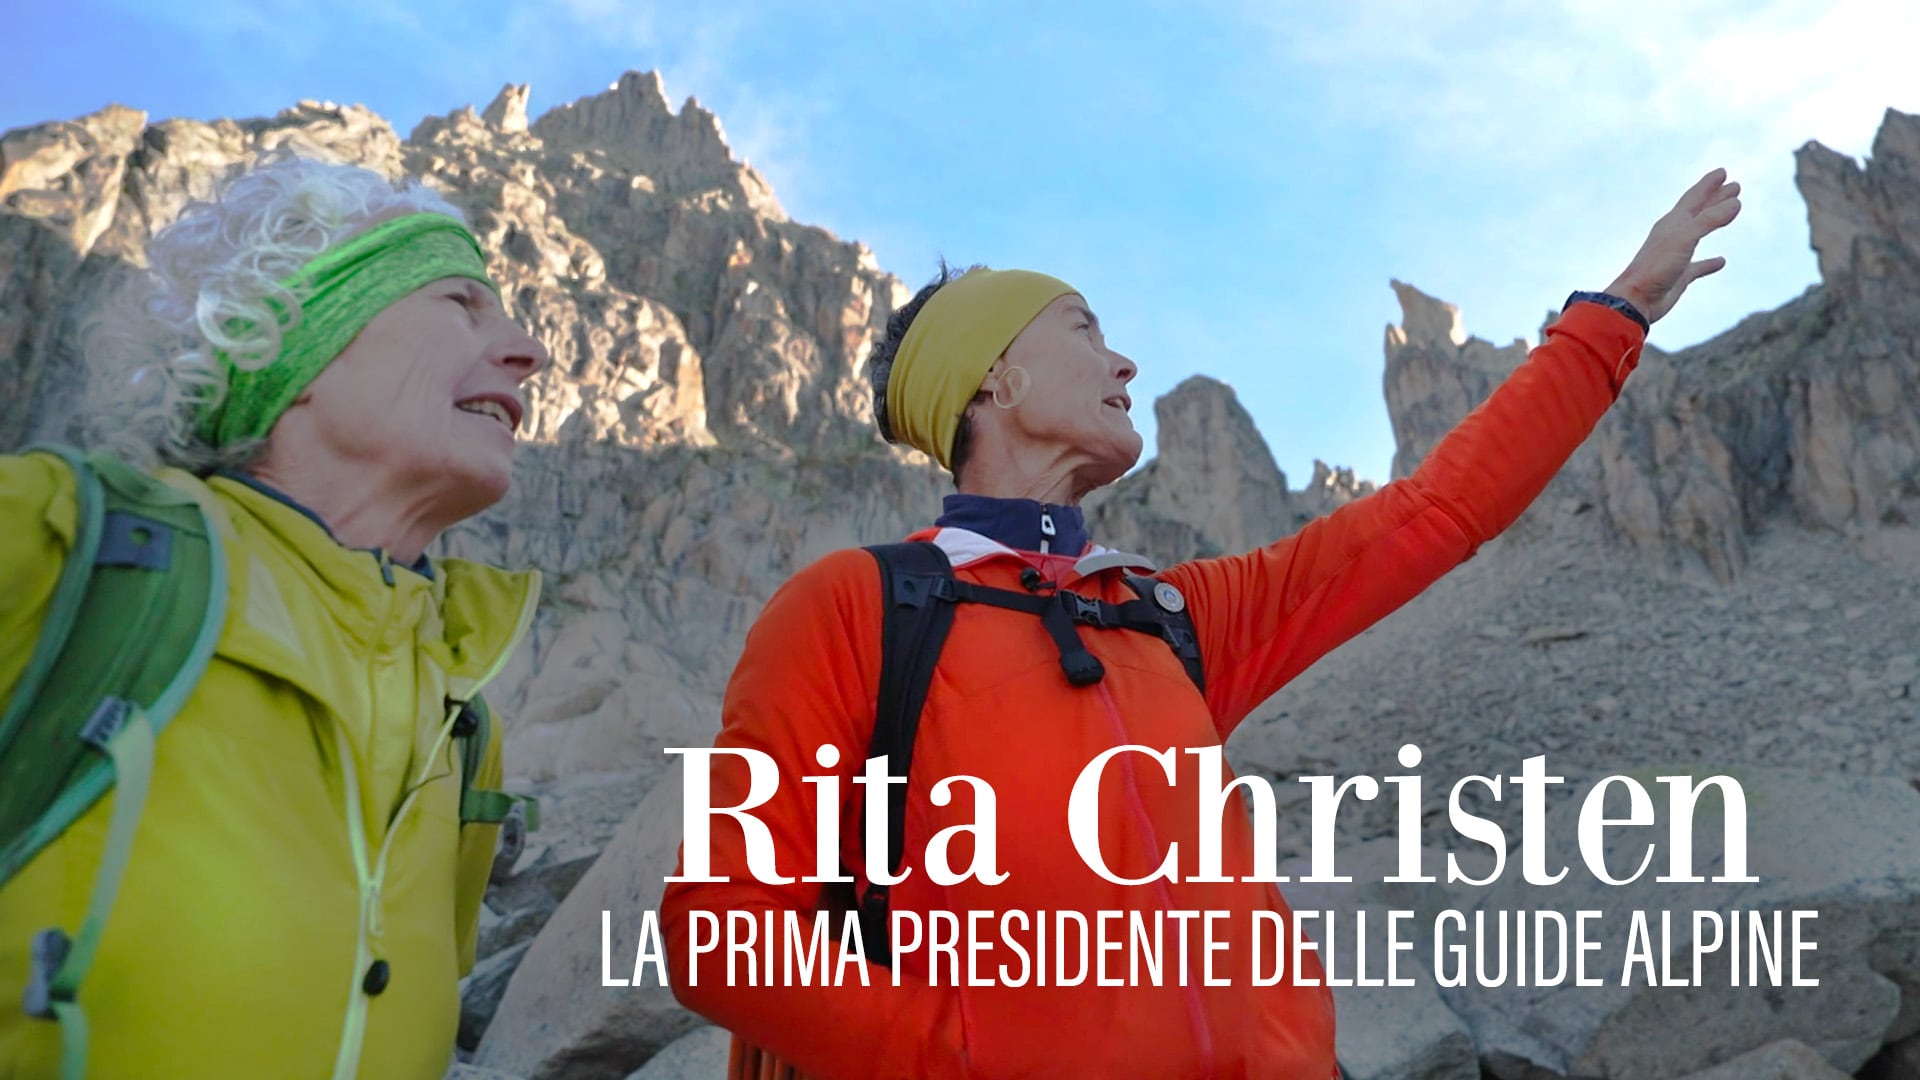 Rita Christen, la prima presidente delle guide alpine